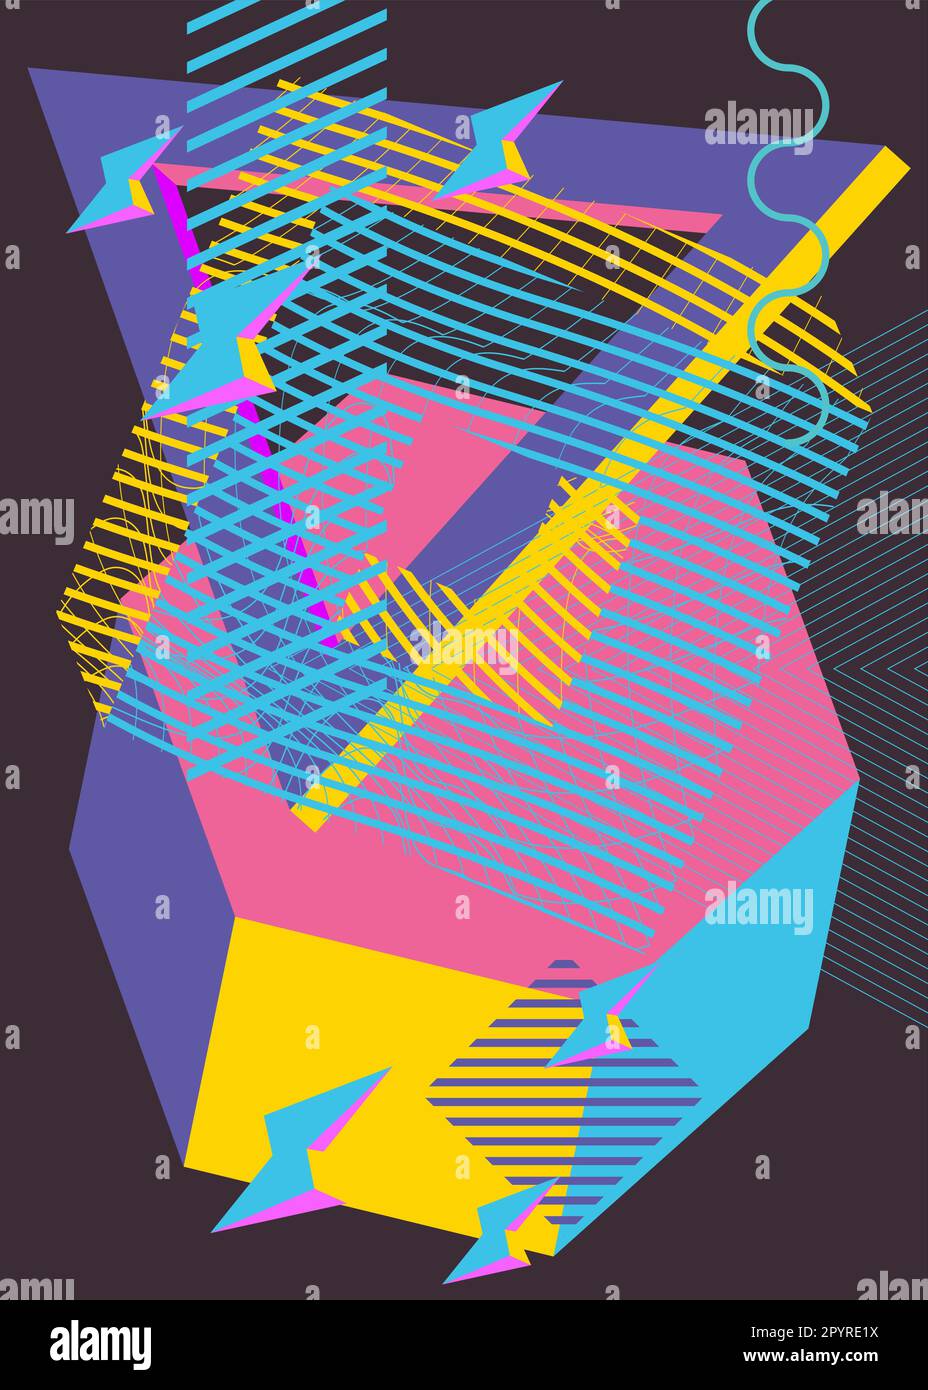 Einfacher Hintergrund mit zufälligen geometrischen Formen. Abstrakte flache Vorlage für Poster, Buchumschlag, Newsletter, soziale Medien mit lebendigen Farben. Stock Vektor